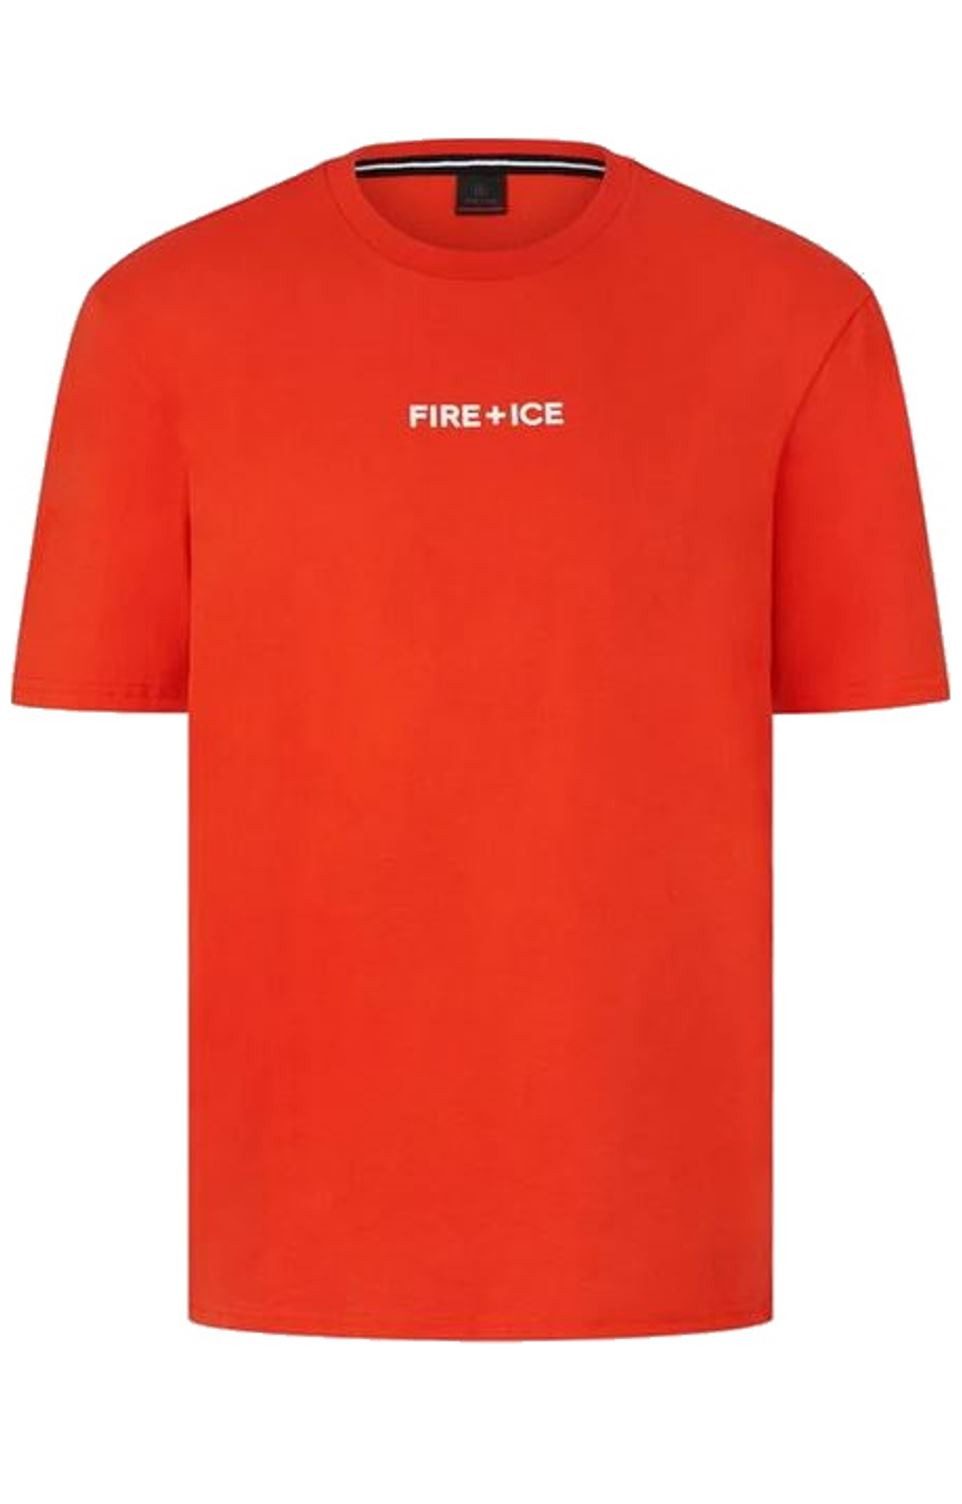 Bogner Fire + Ice T-Shirt